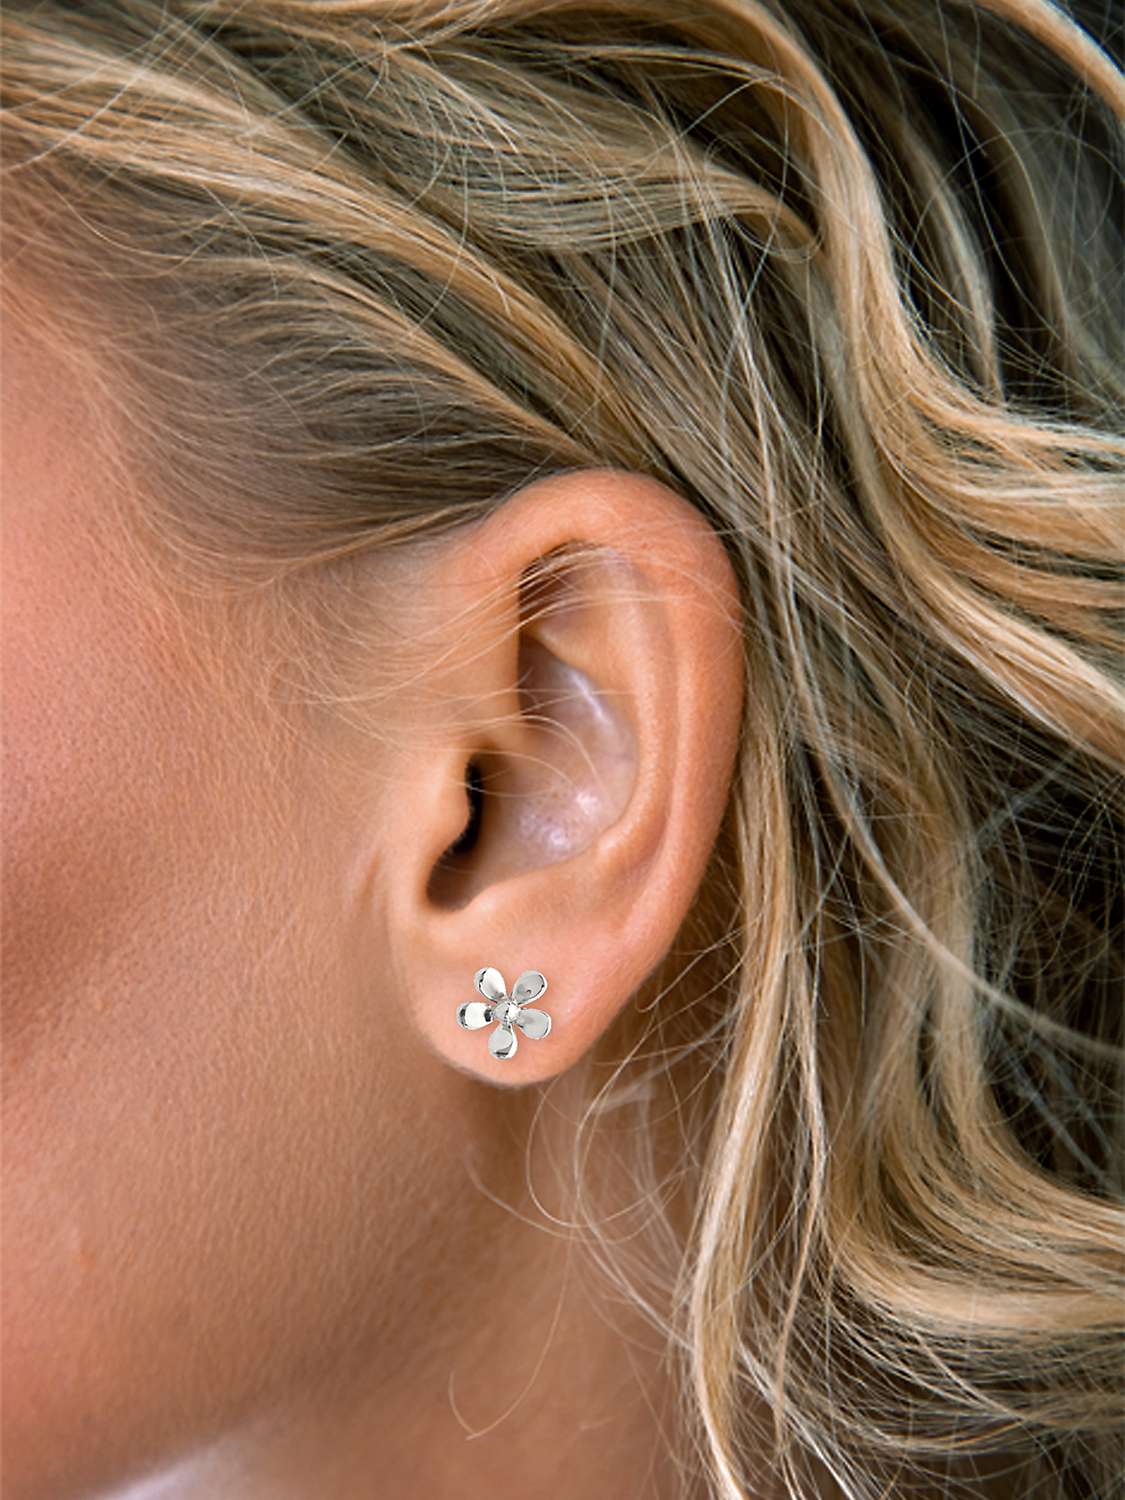 Buy Nina B Silver Flower Stud Earrings, Silver Online at johnlewis.com